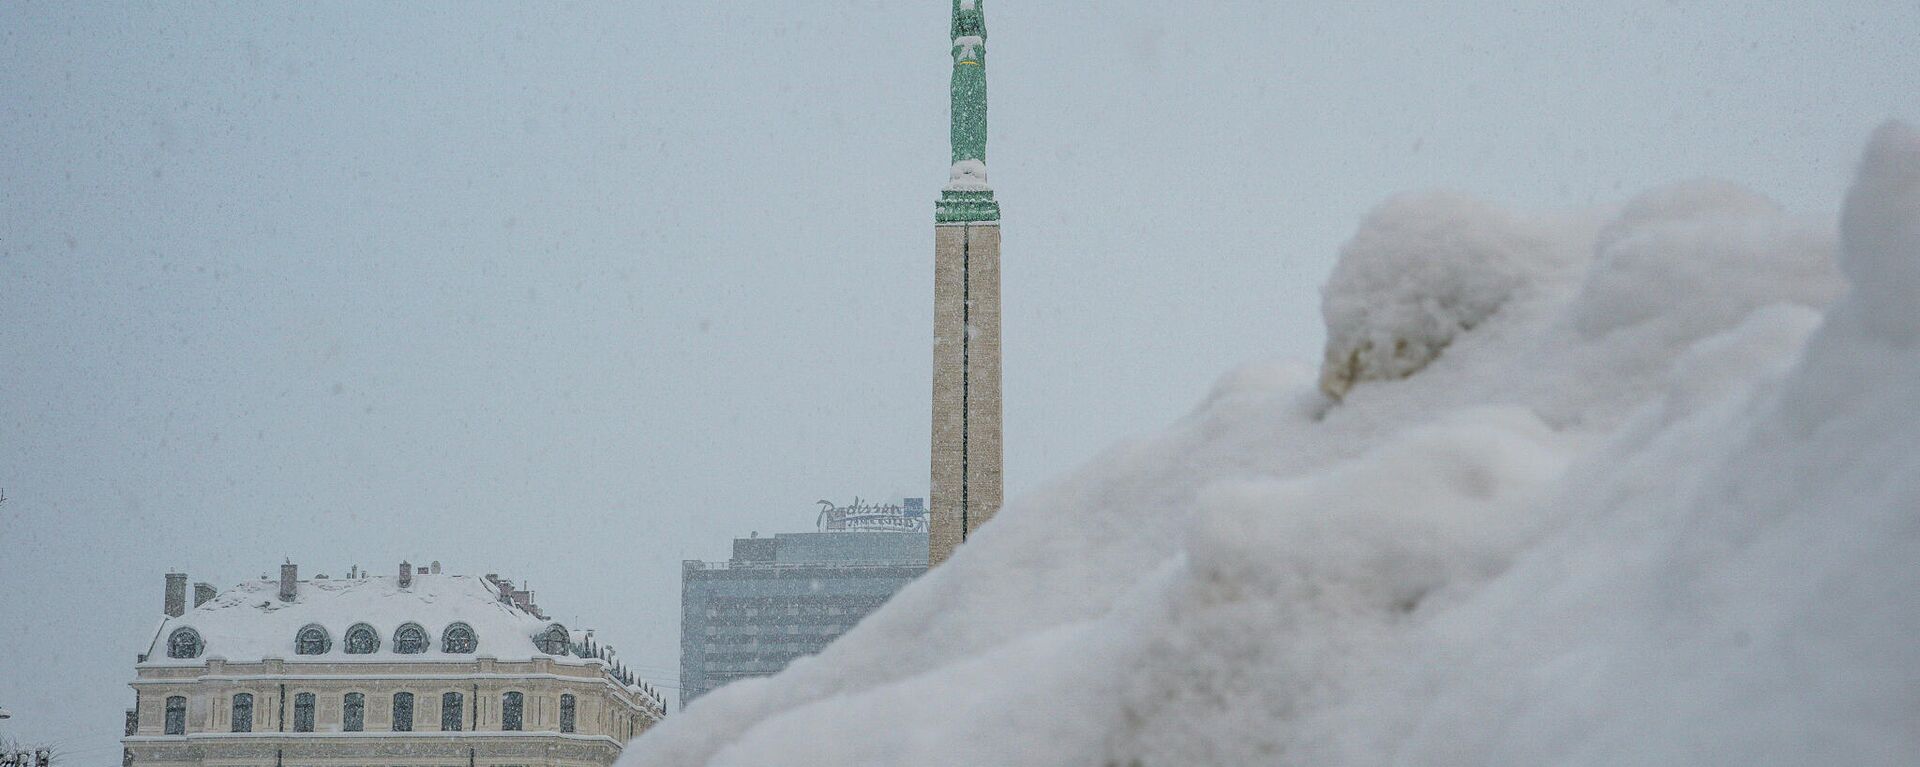 Памятник Свободы в Риге во время снегопада - Sputnik Латвия, 1920, 22.12.2021